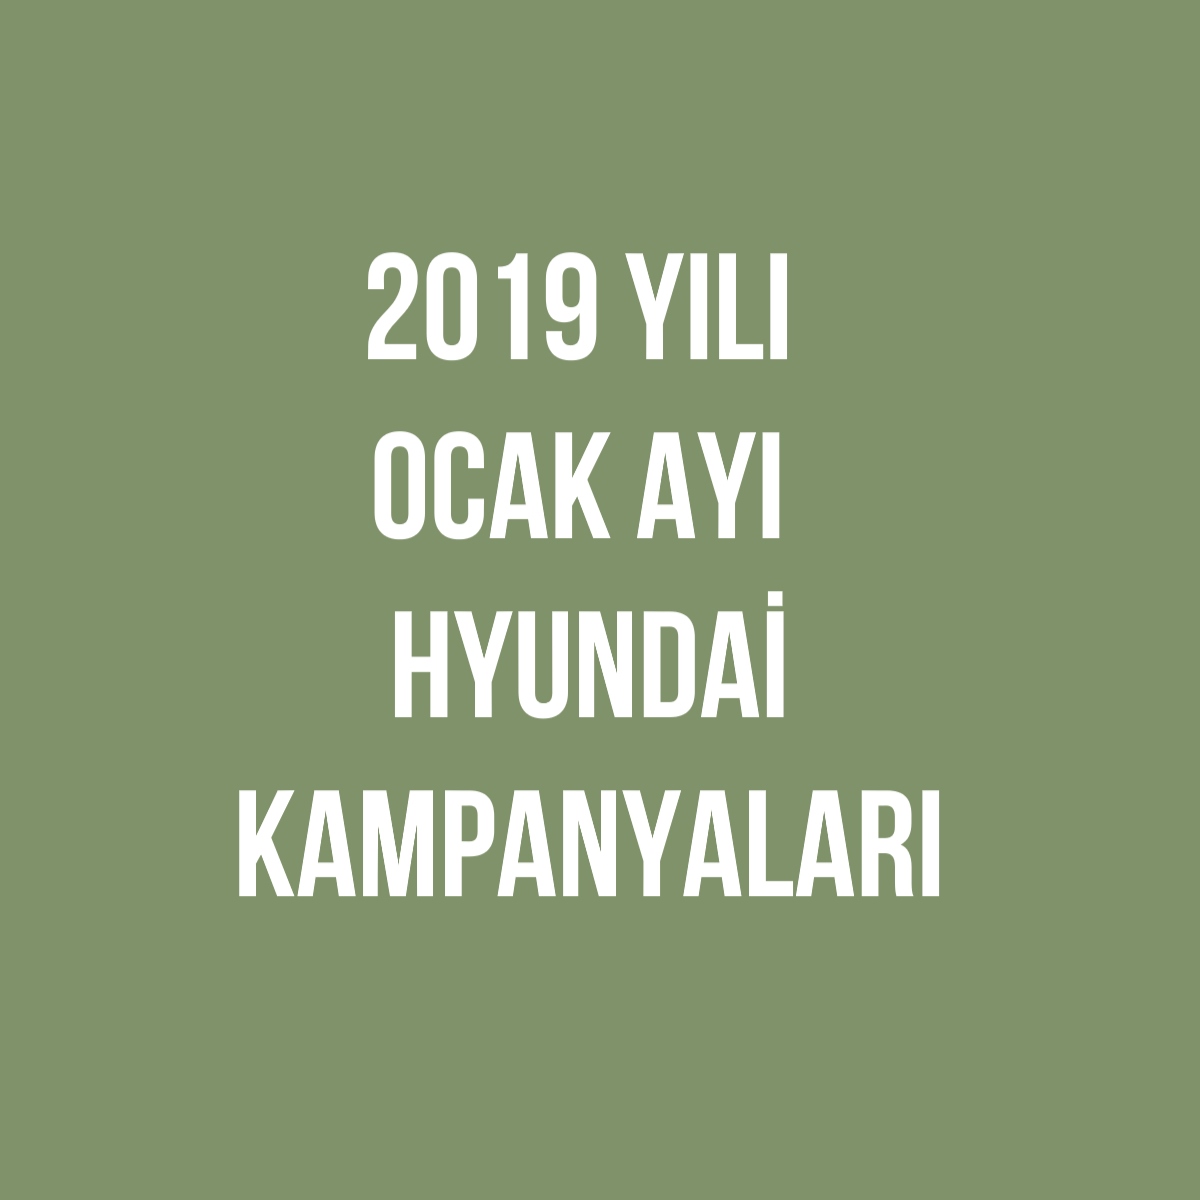 Hyundai 2019 Yılı Ocak Ayı Kampanyaları